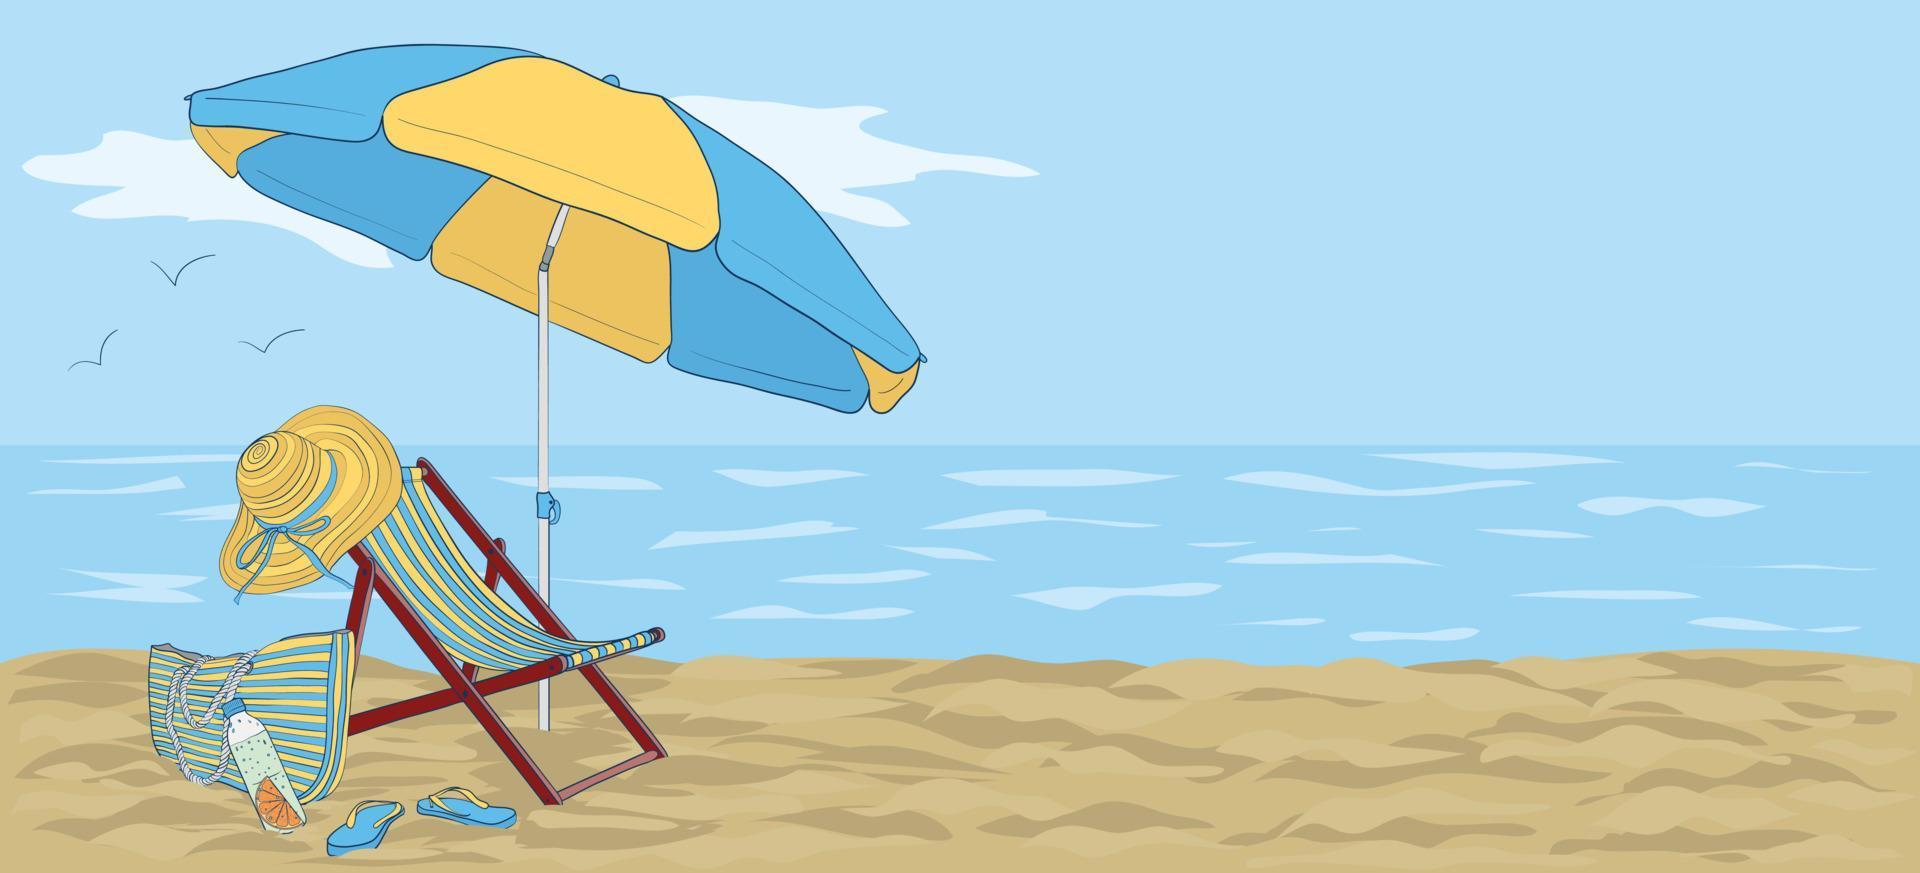 longue en la playa bajo una sombrilla contra el fondo del mar o el océano. ilustración de vacaciones junto al mar. vector